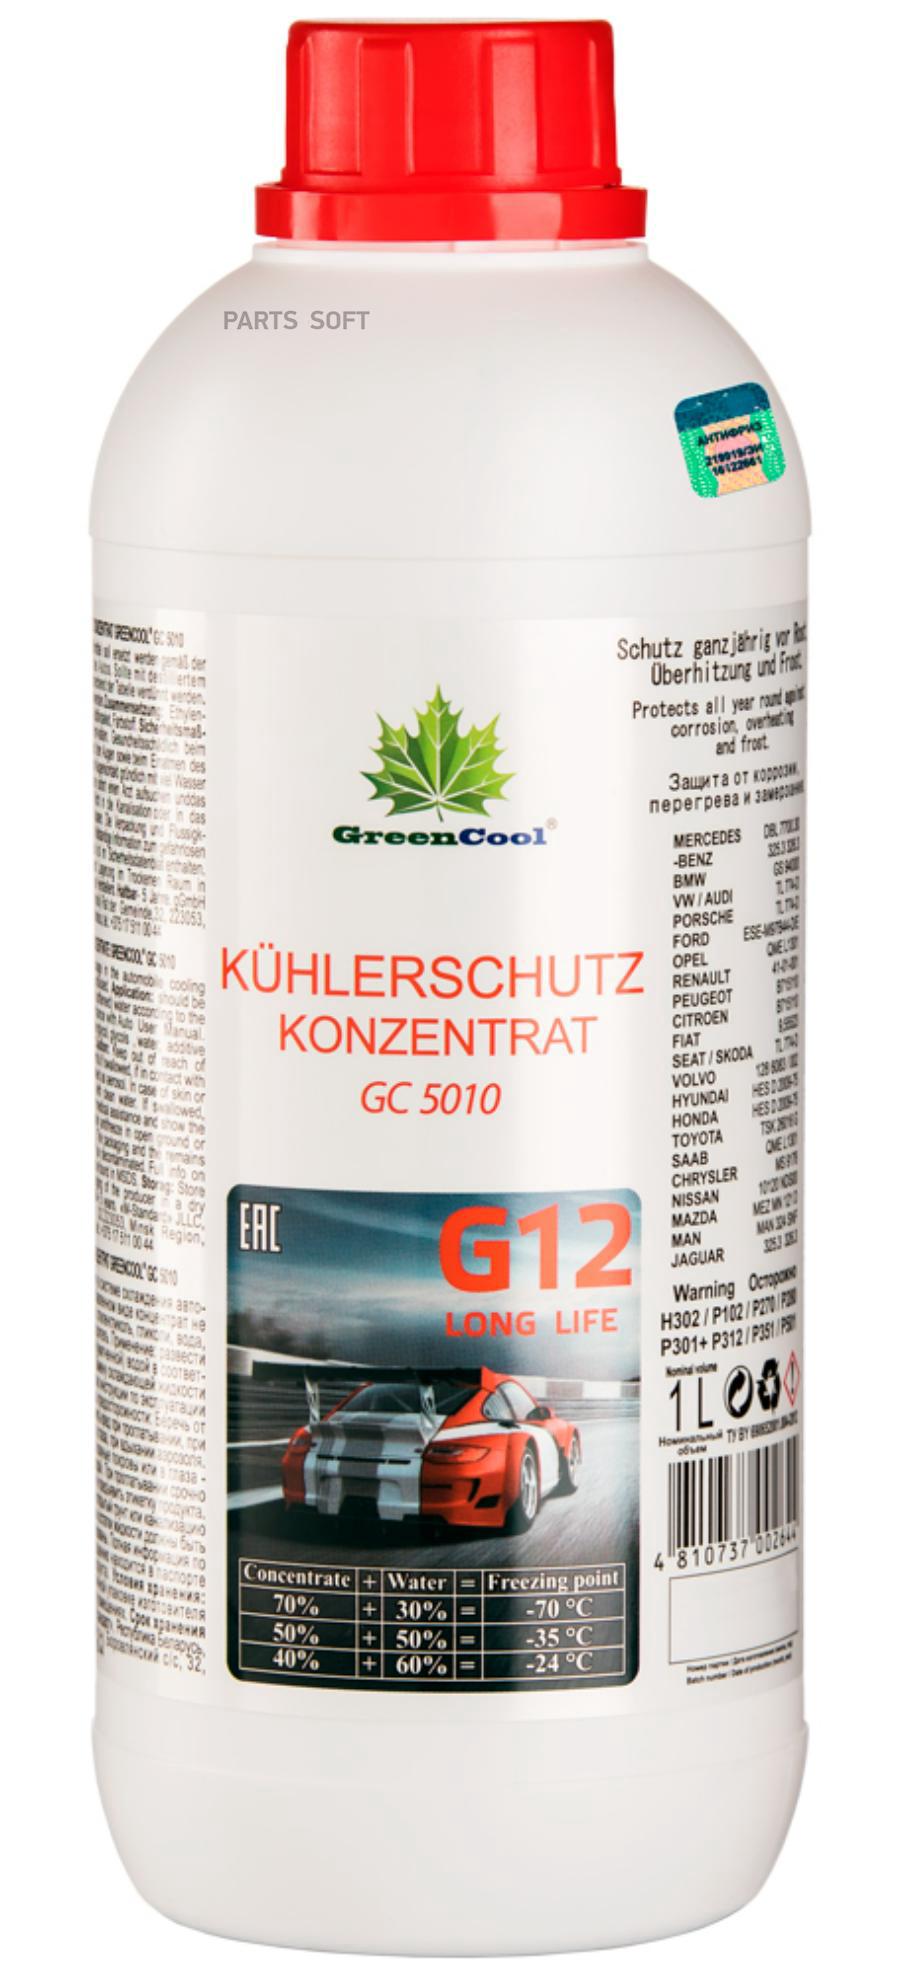 GREENCOOL GС5010 1KG концентрат антифриз 702644 красный концентрат 1:1 -35C G12\ улучшенны